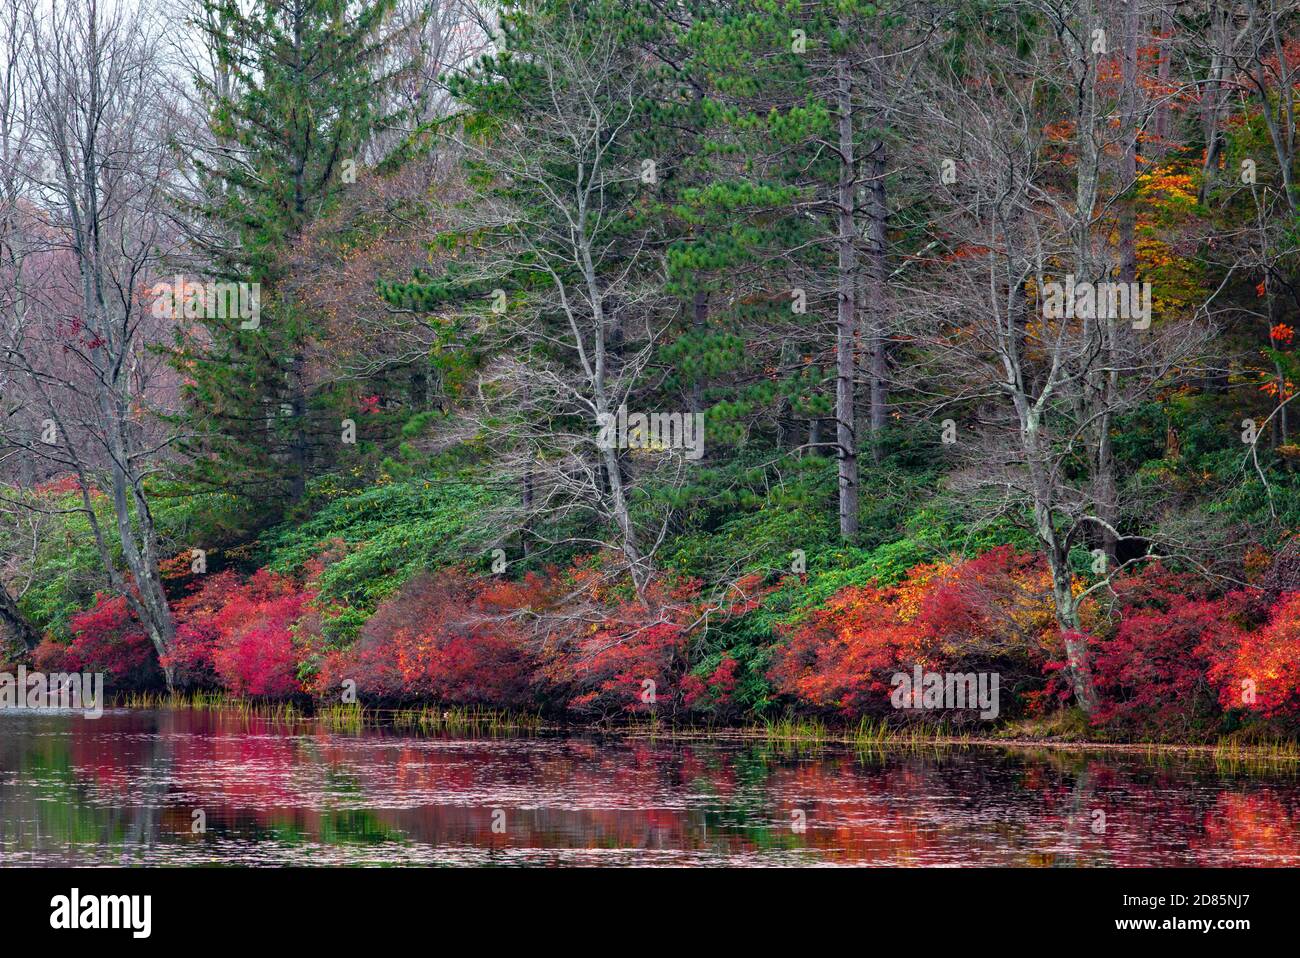 La végétation de la fin de l’automne s’étend le long des rives du lac Promise Land au parc national Promise Land, dans les montagnes Pocono de Pennsylvanie. Banque D'Images